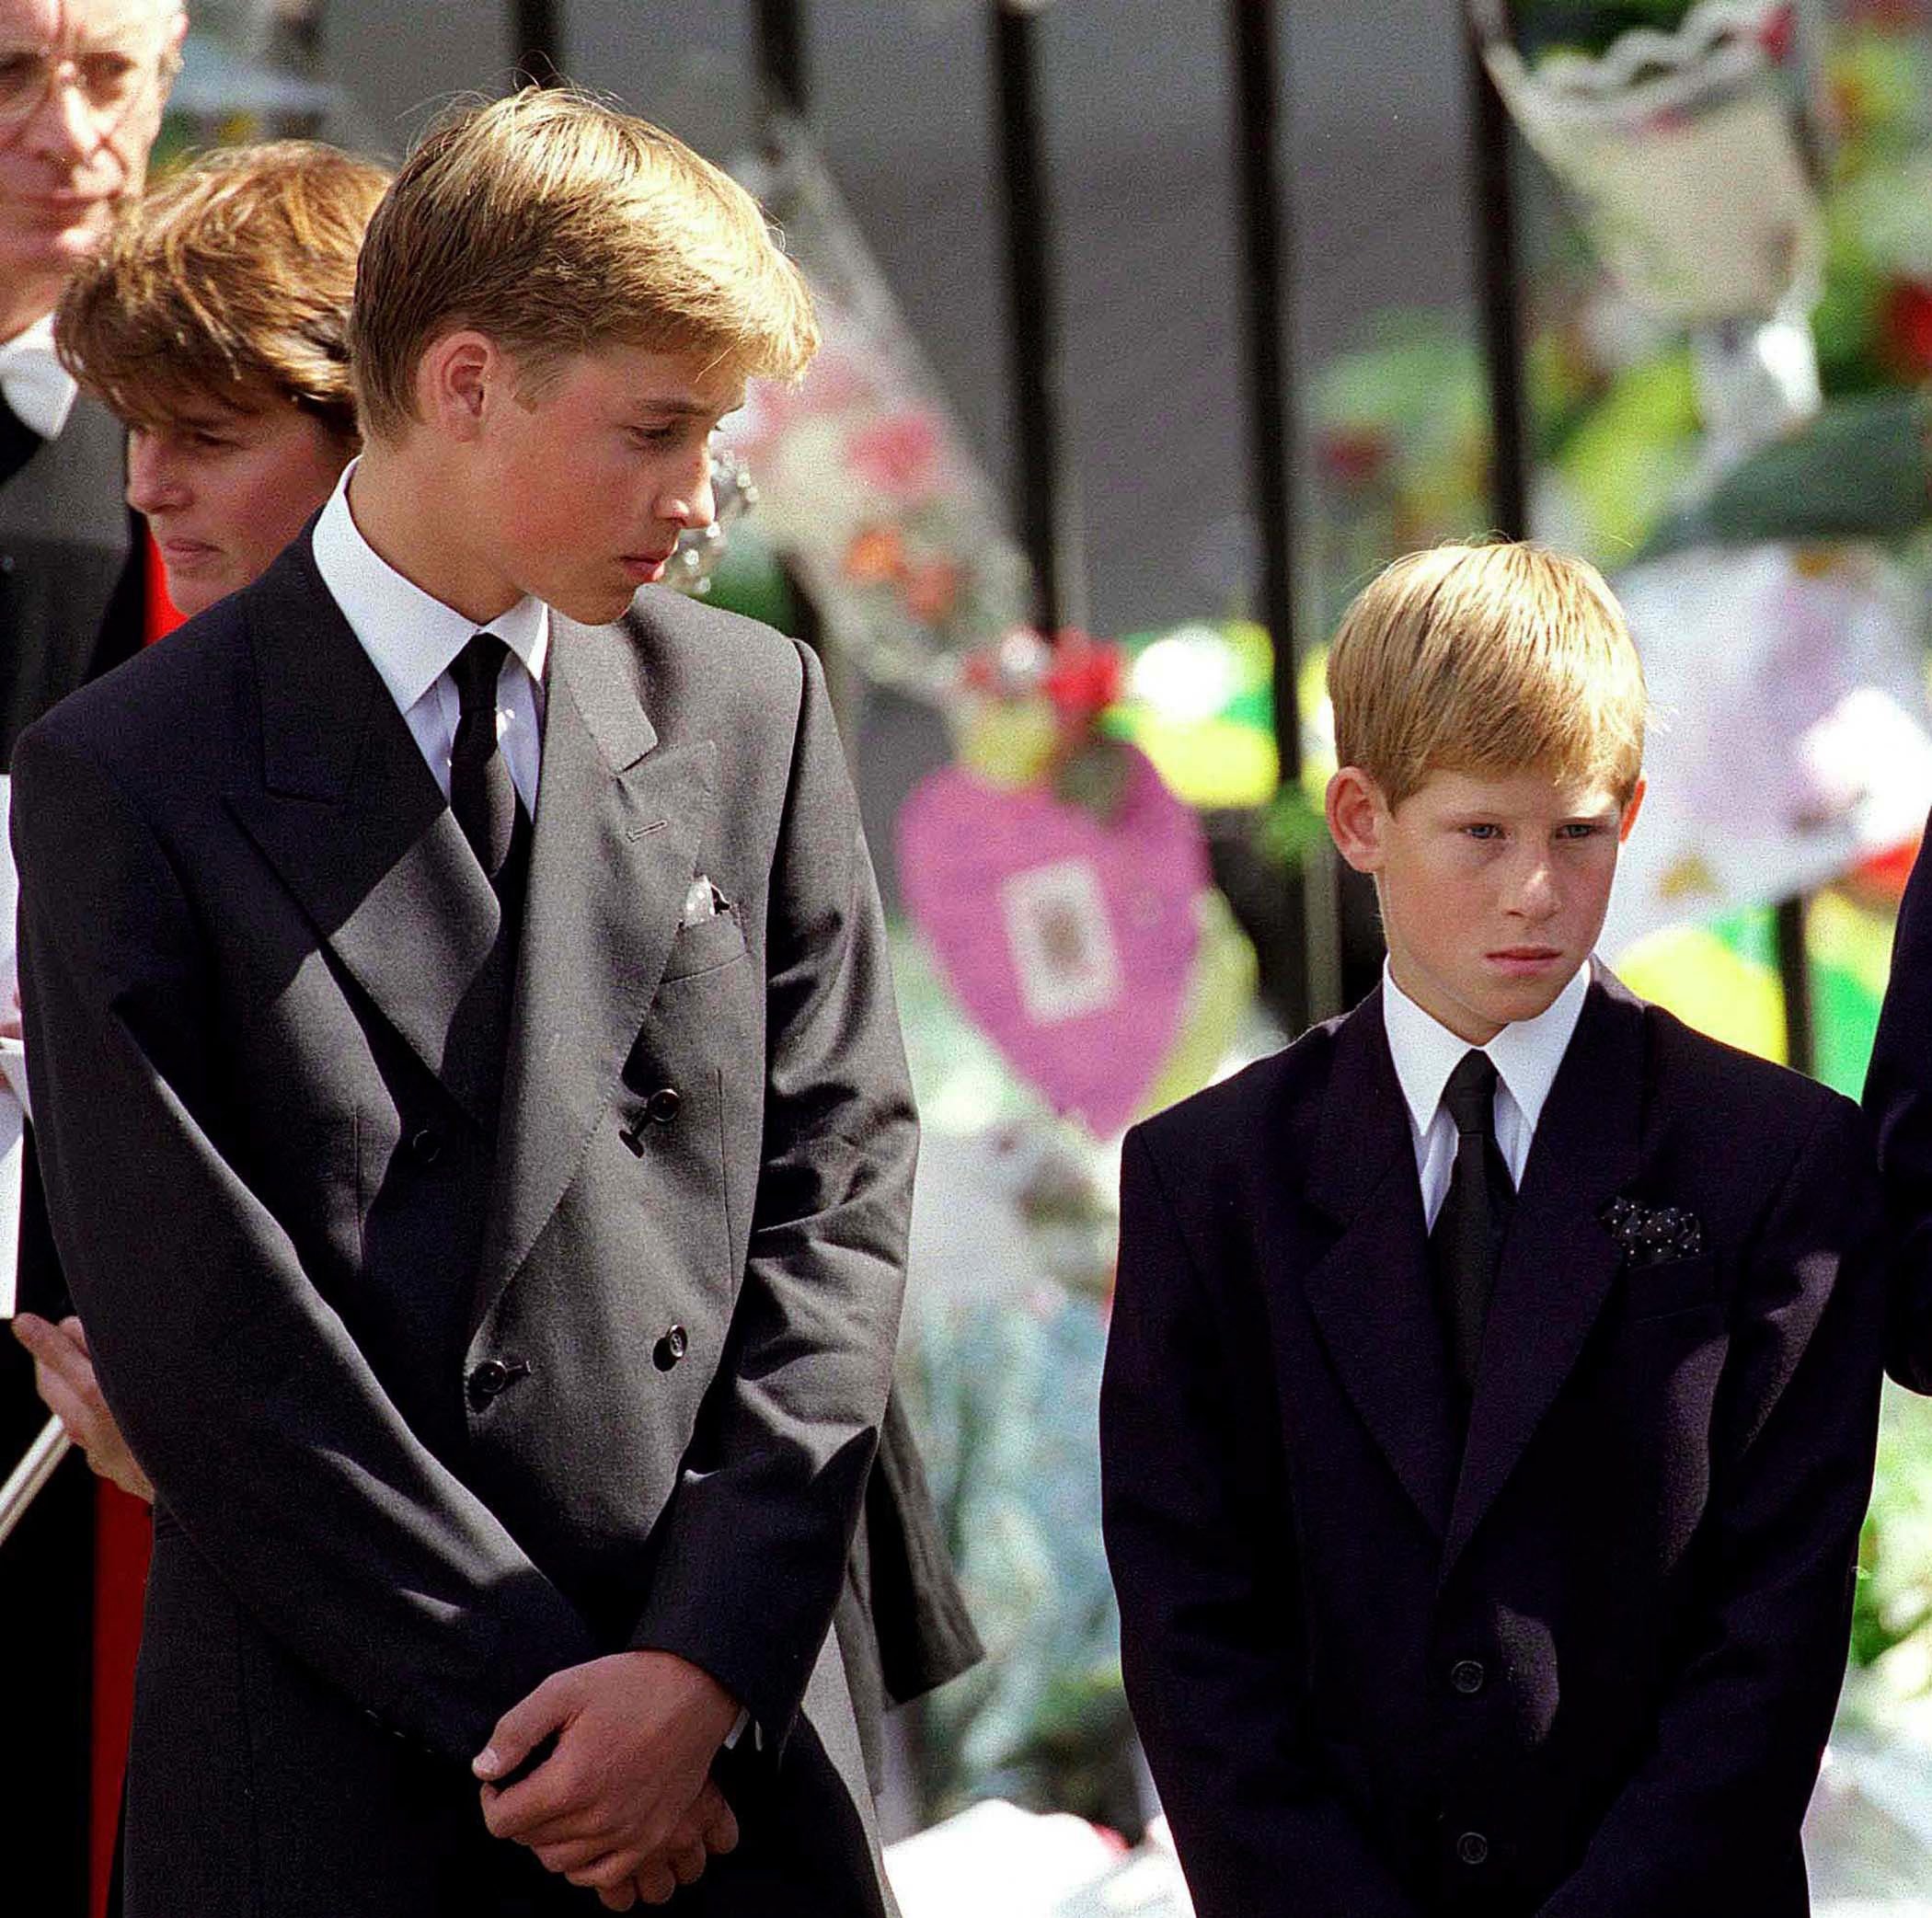 El príncipe William y el príncipe Harry en el funeral de Diana, Princesa de Gales, el 6 de septiembre de 1997 en Londres, Inglaterra. | Foto: Getty Images